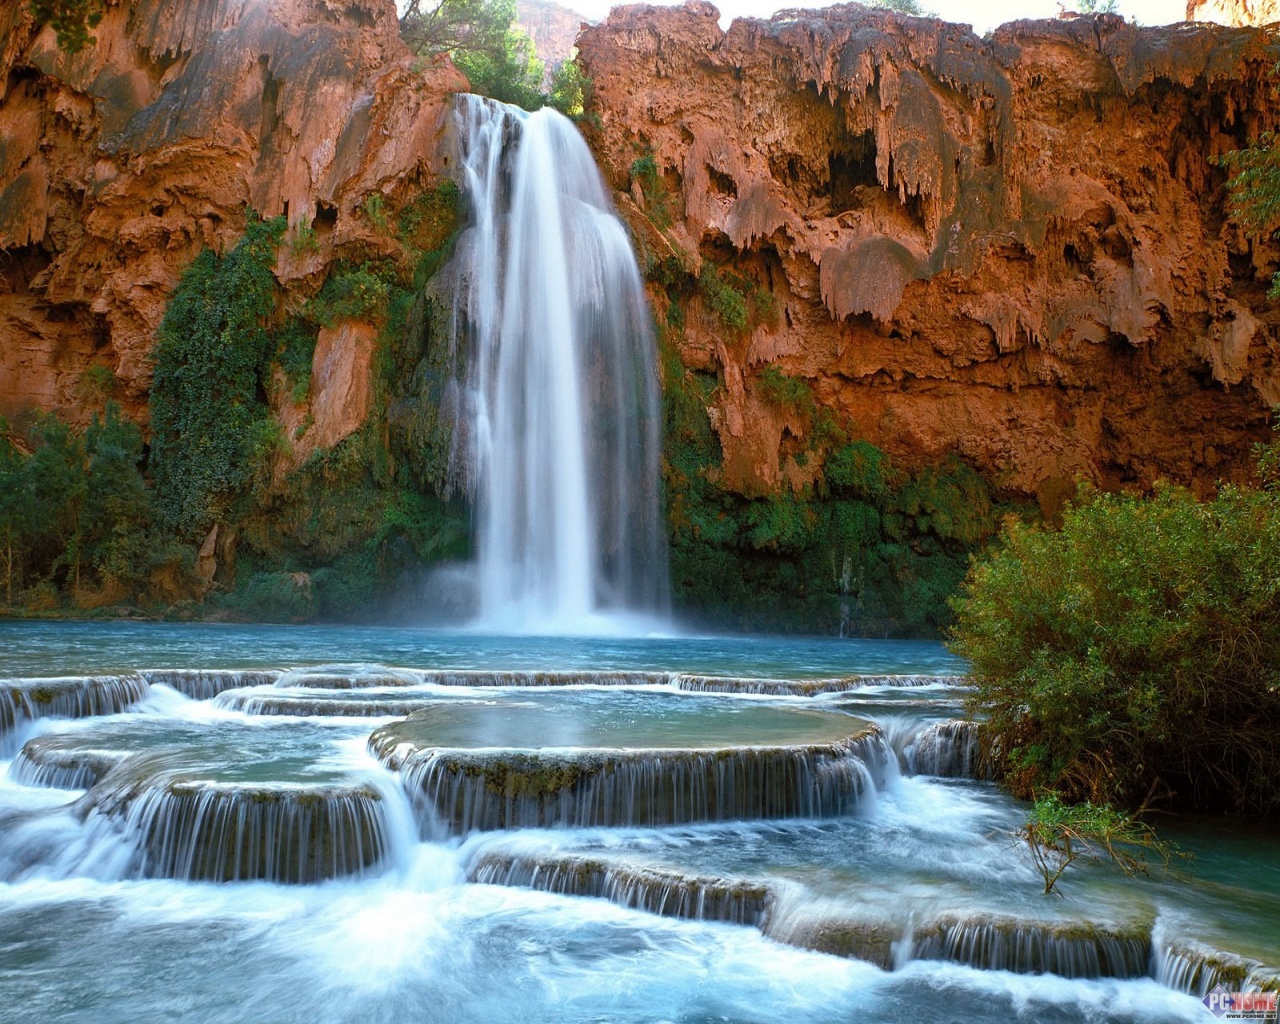  Falls Arizona Wallpaper Download for Desktop Best Pics 1280x1024